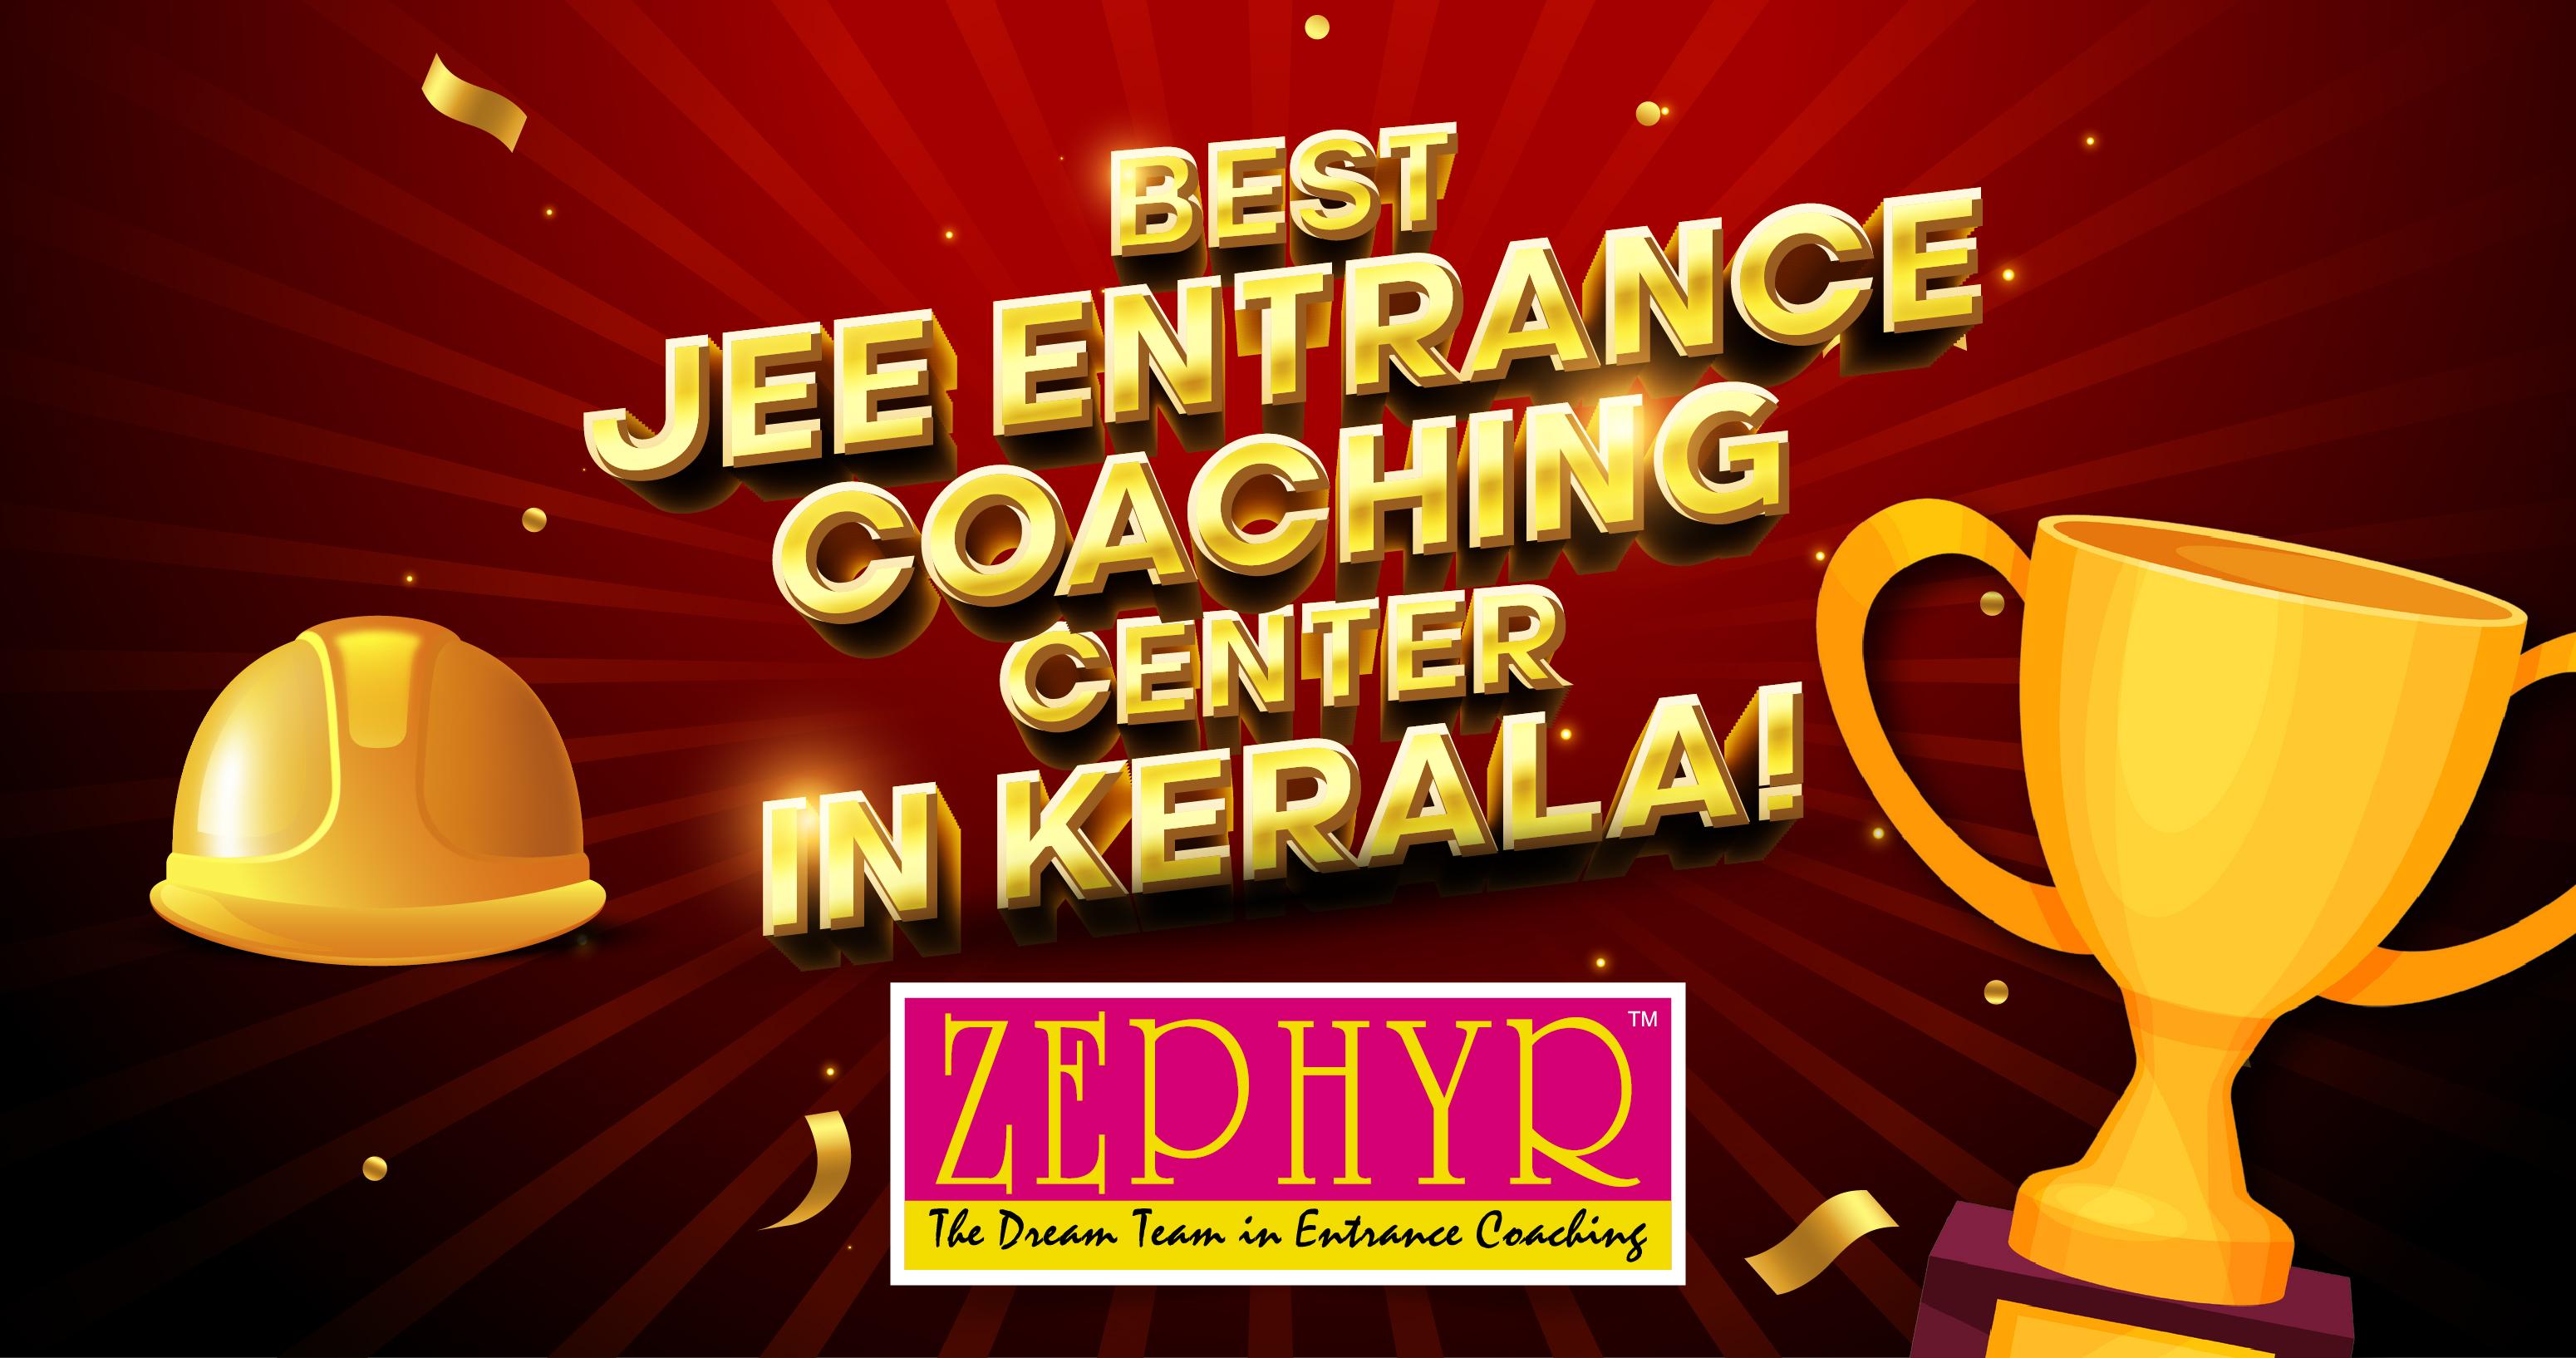 Best JEE entrance coaching Center in Kerala